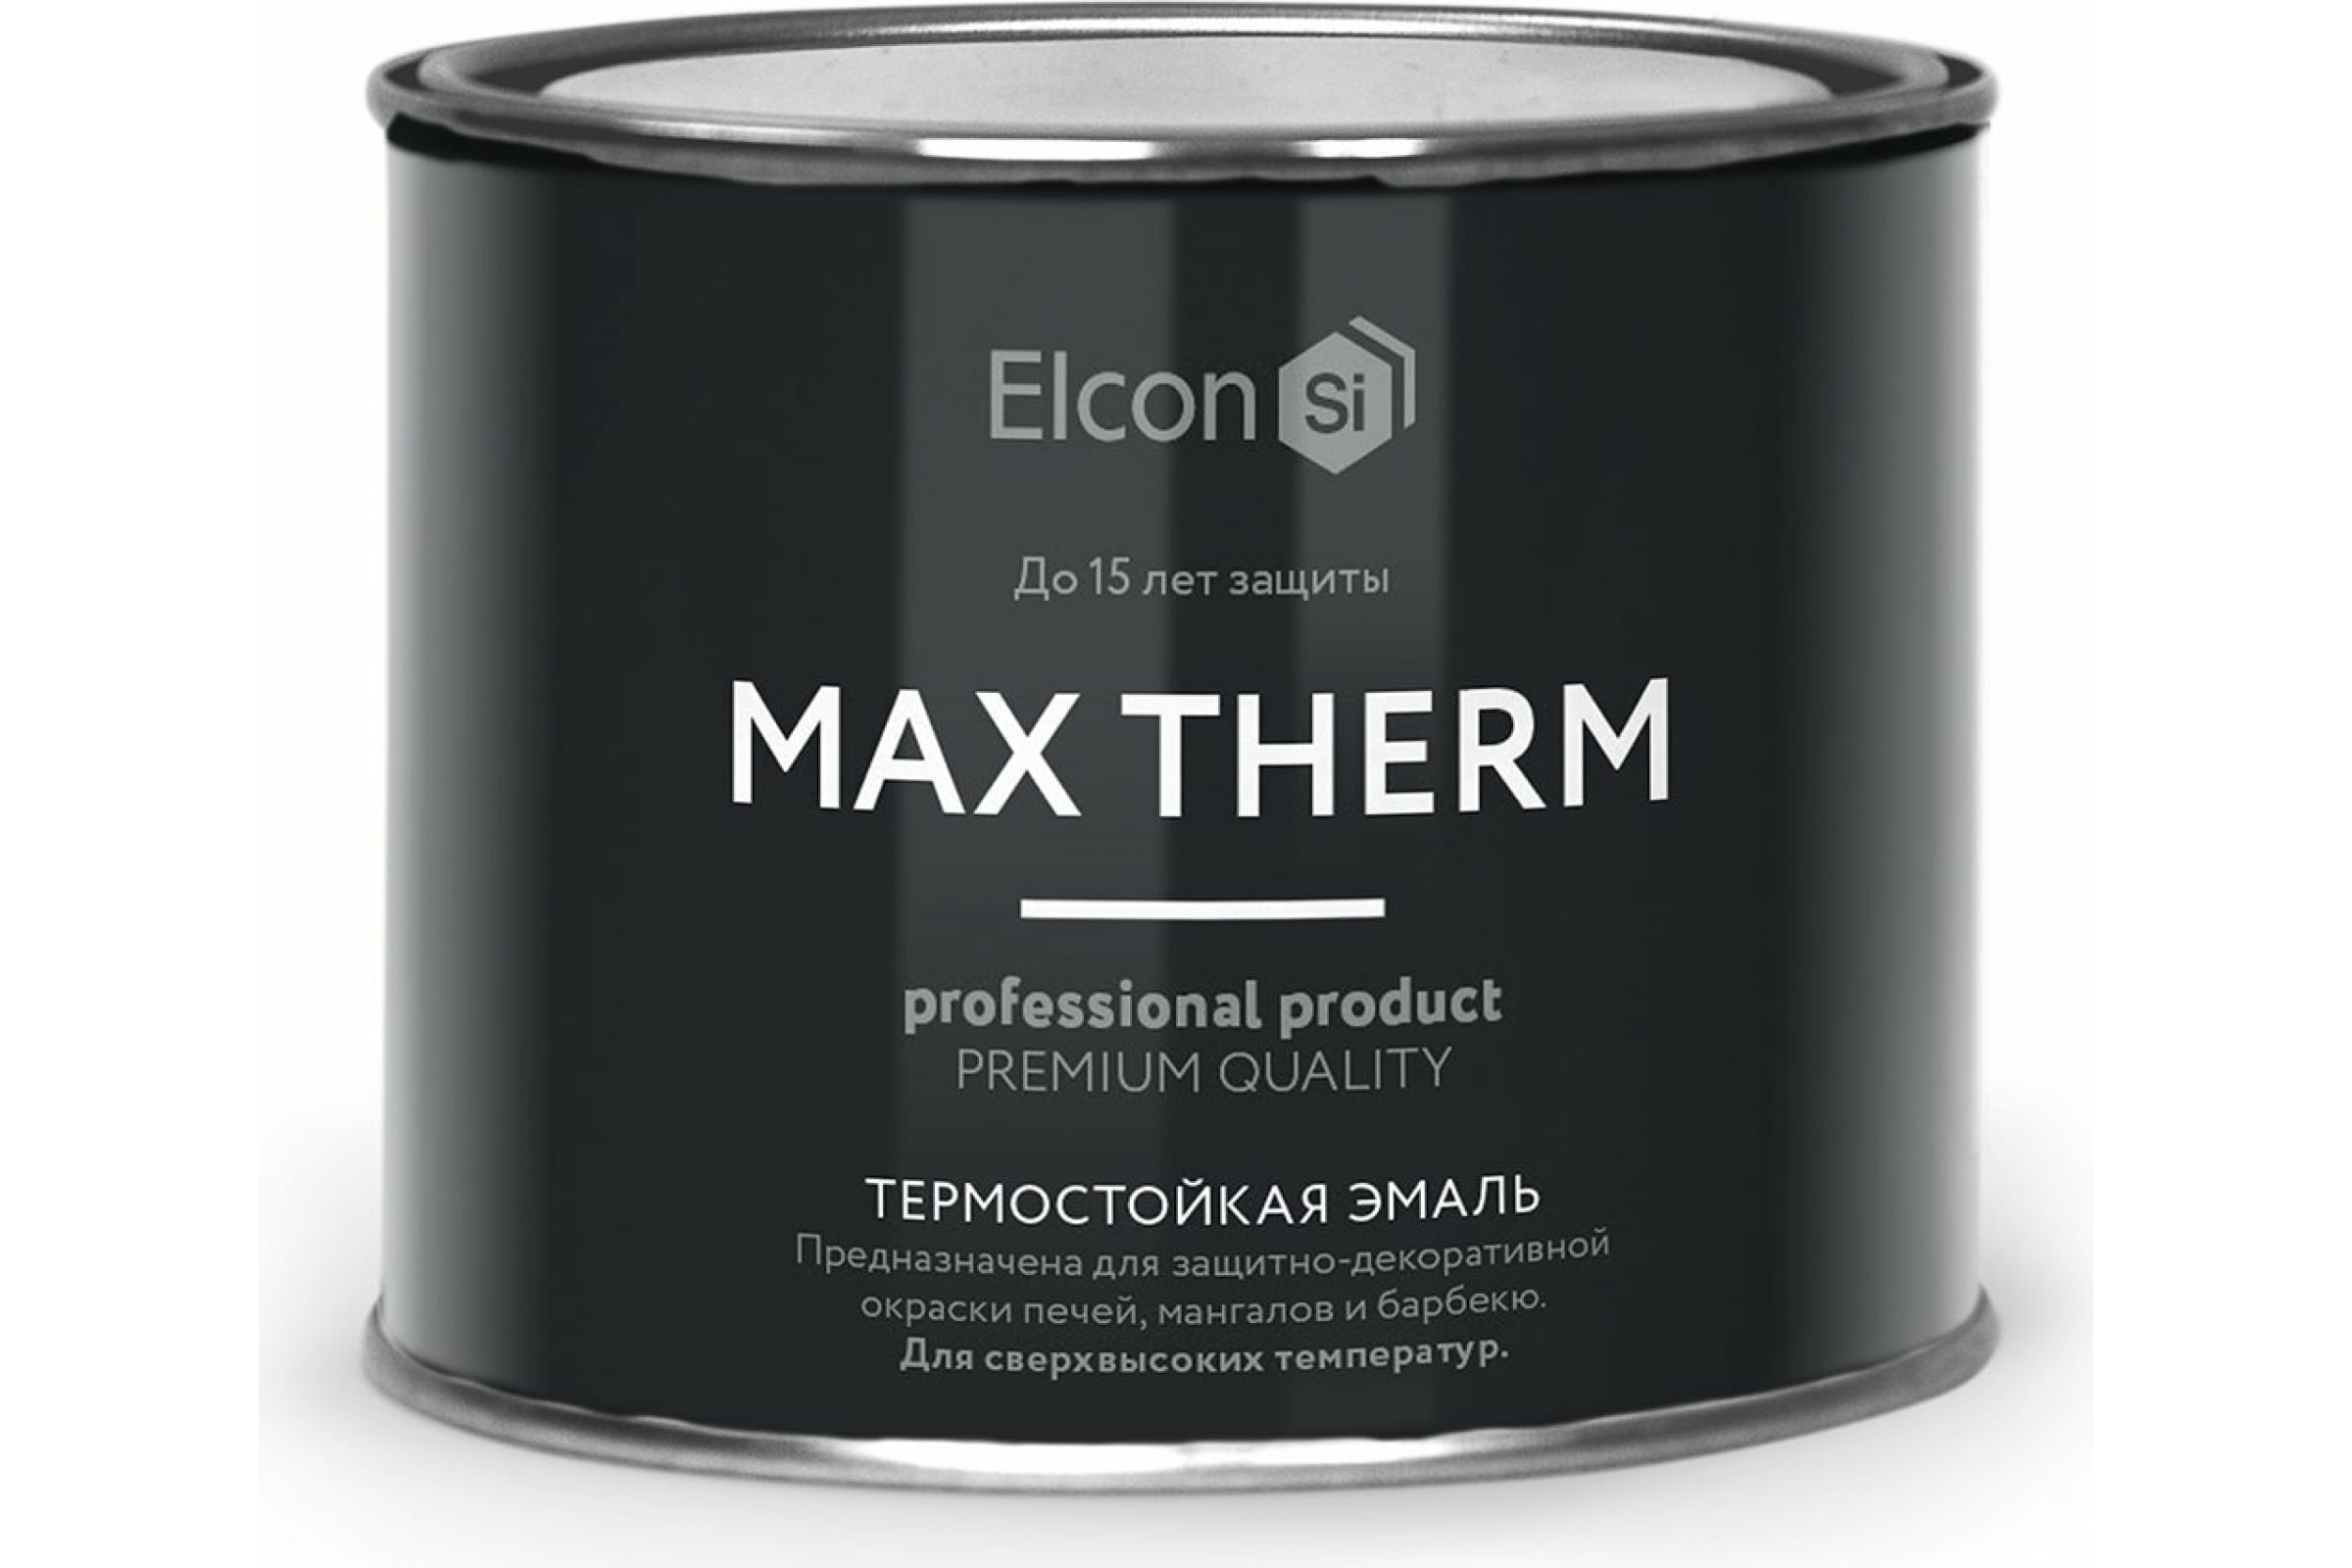 Термостойкая антикоррозионная эмаль Elcon Max Therm до 400 градусов, 0,4 л, бежевая термостойкая антикоррозионная эмаль elcon max therm до 400 градусов 0 4 л синяя